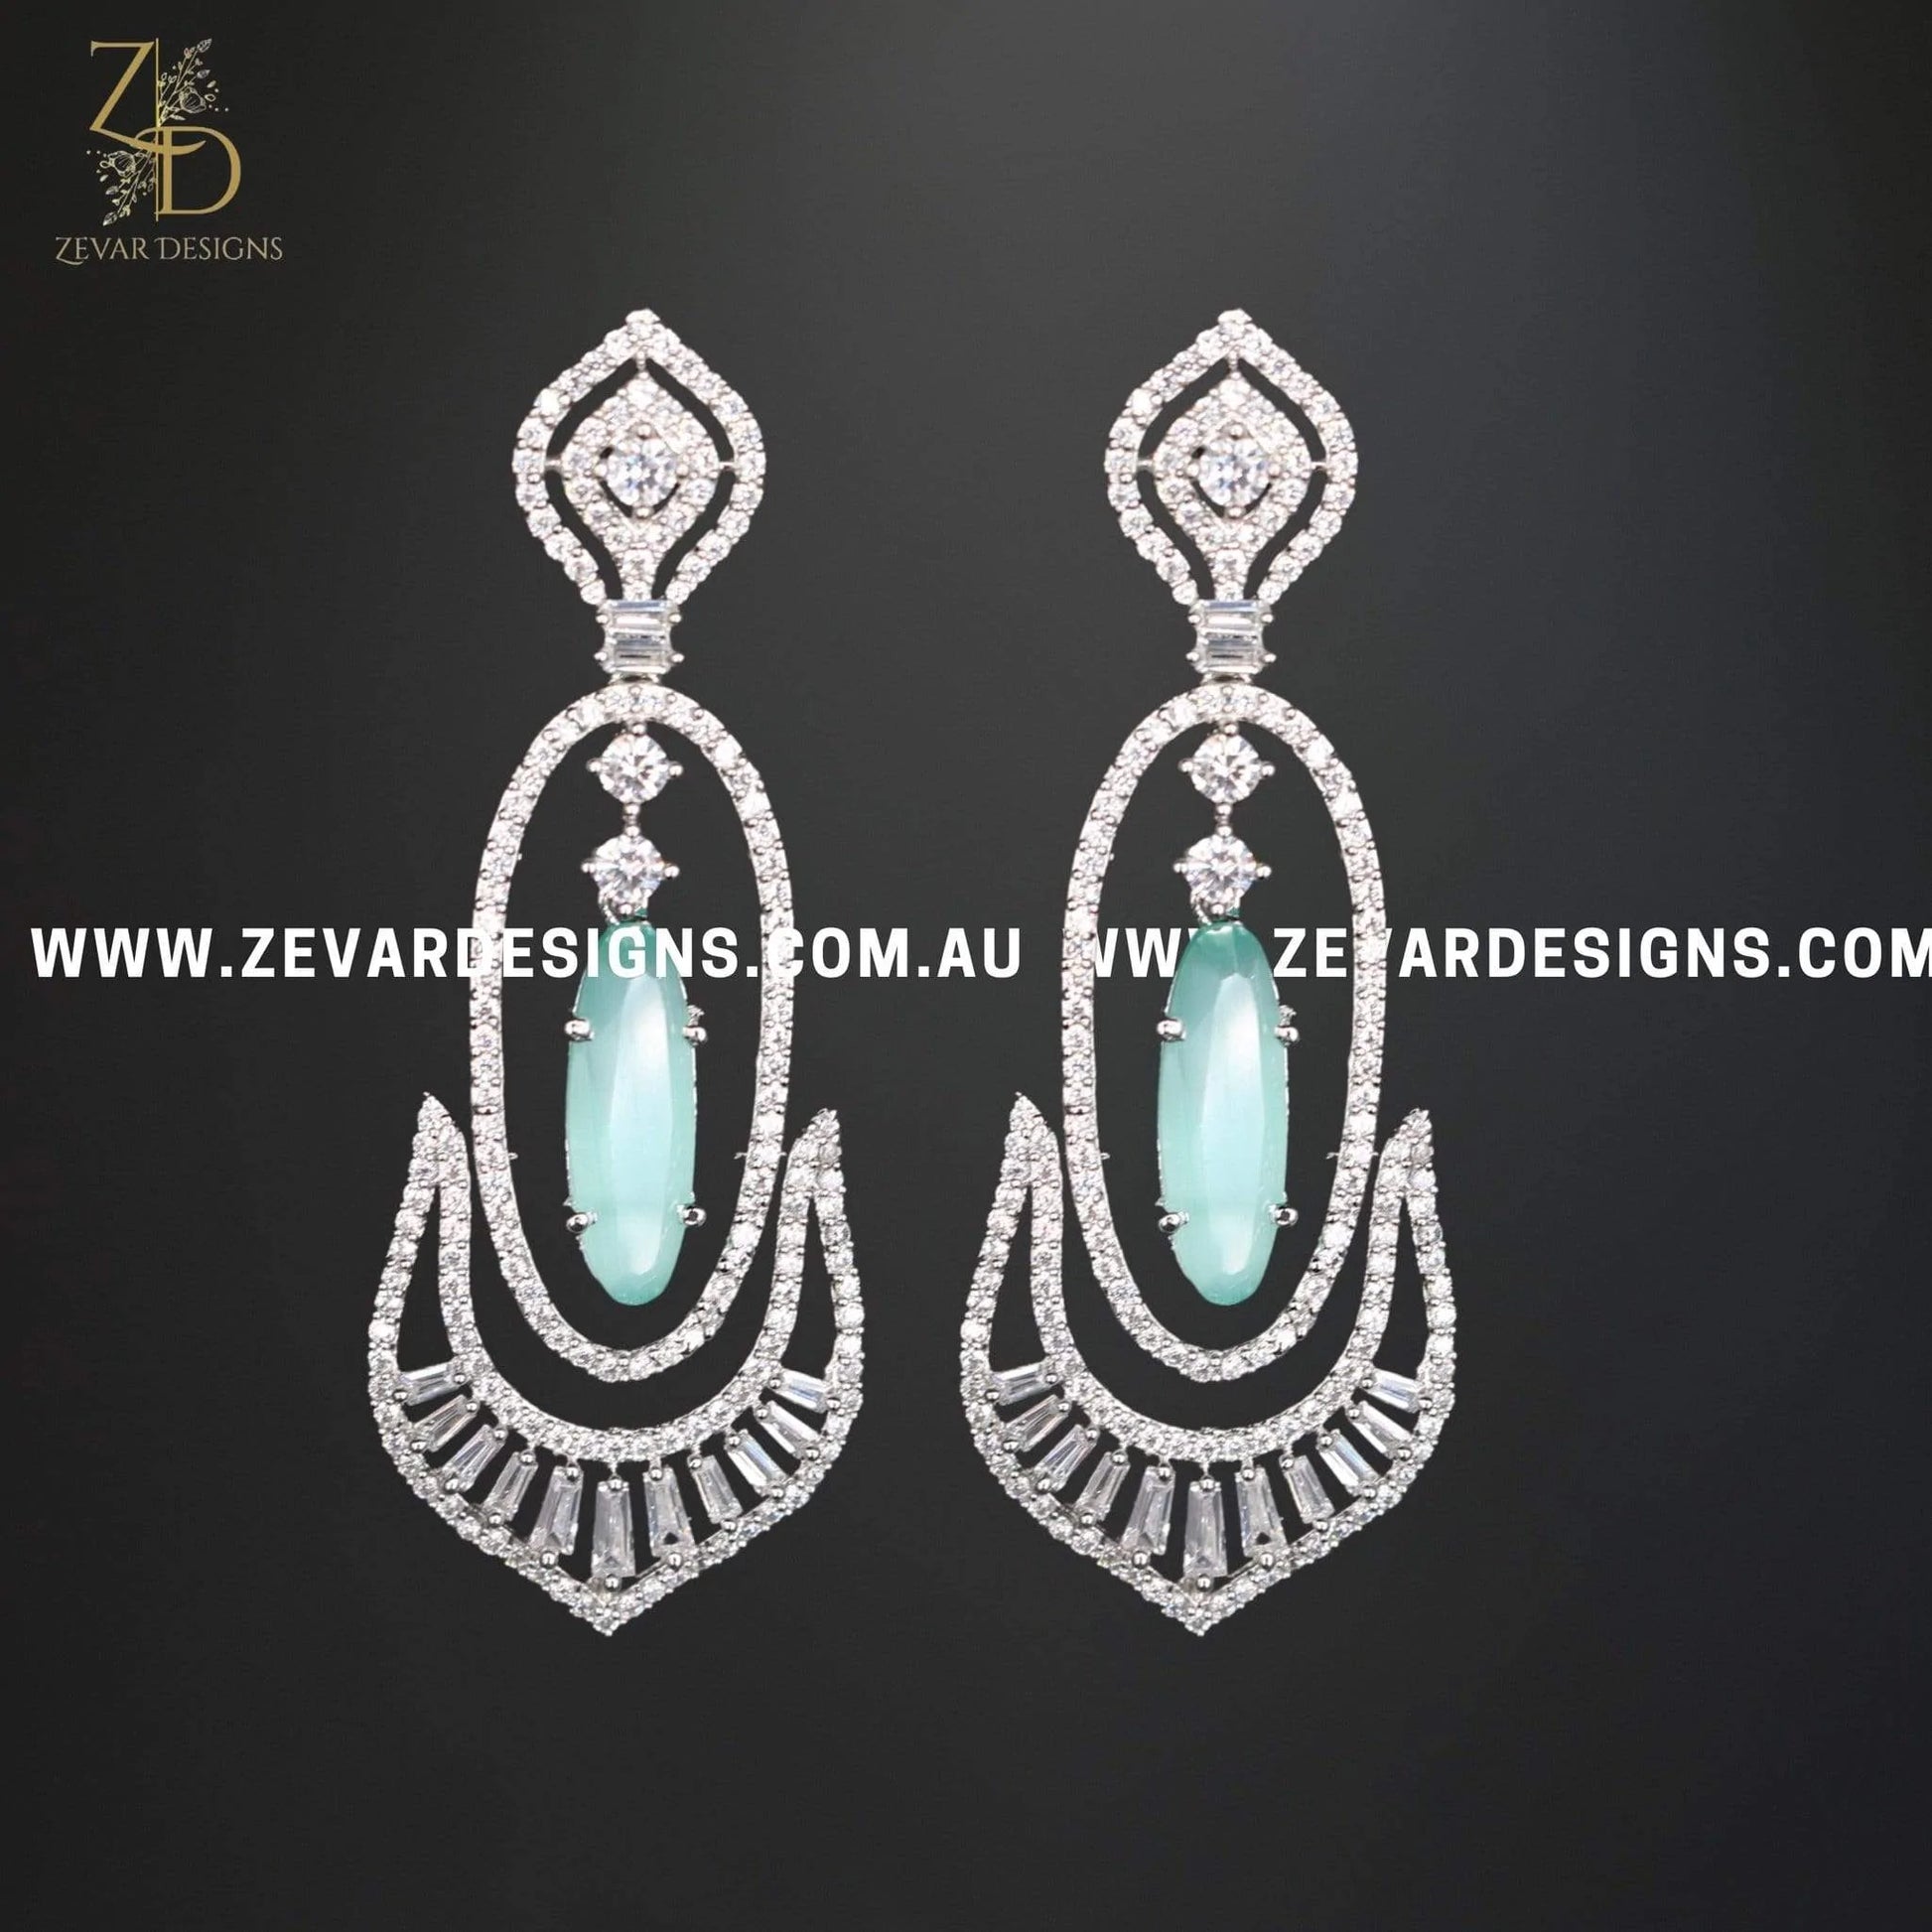 Zevar Designs Indo-Western Earrings Zircon Earrings in Mint Green and White Rhodium